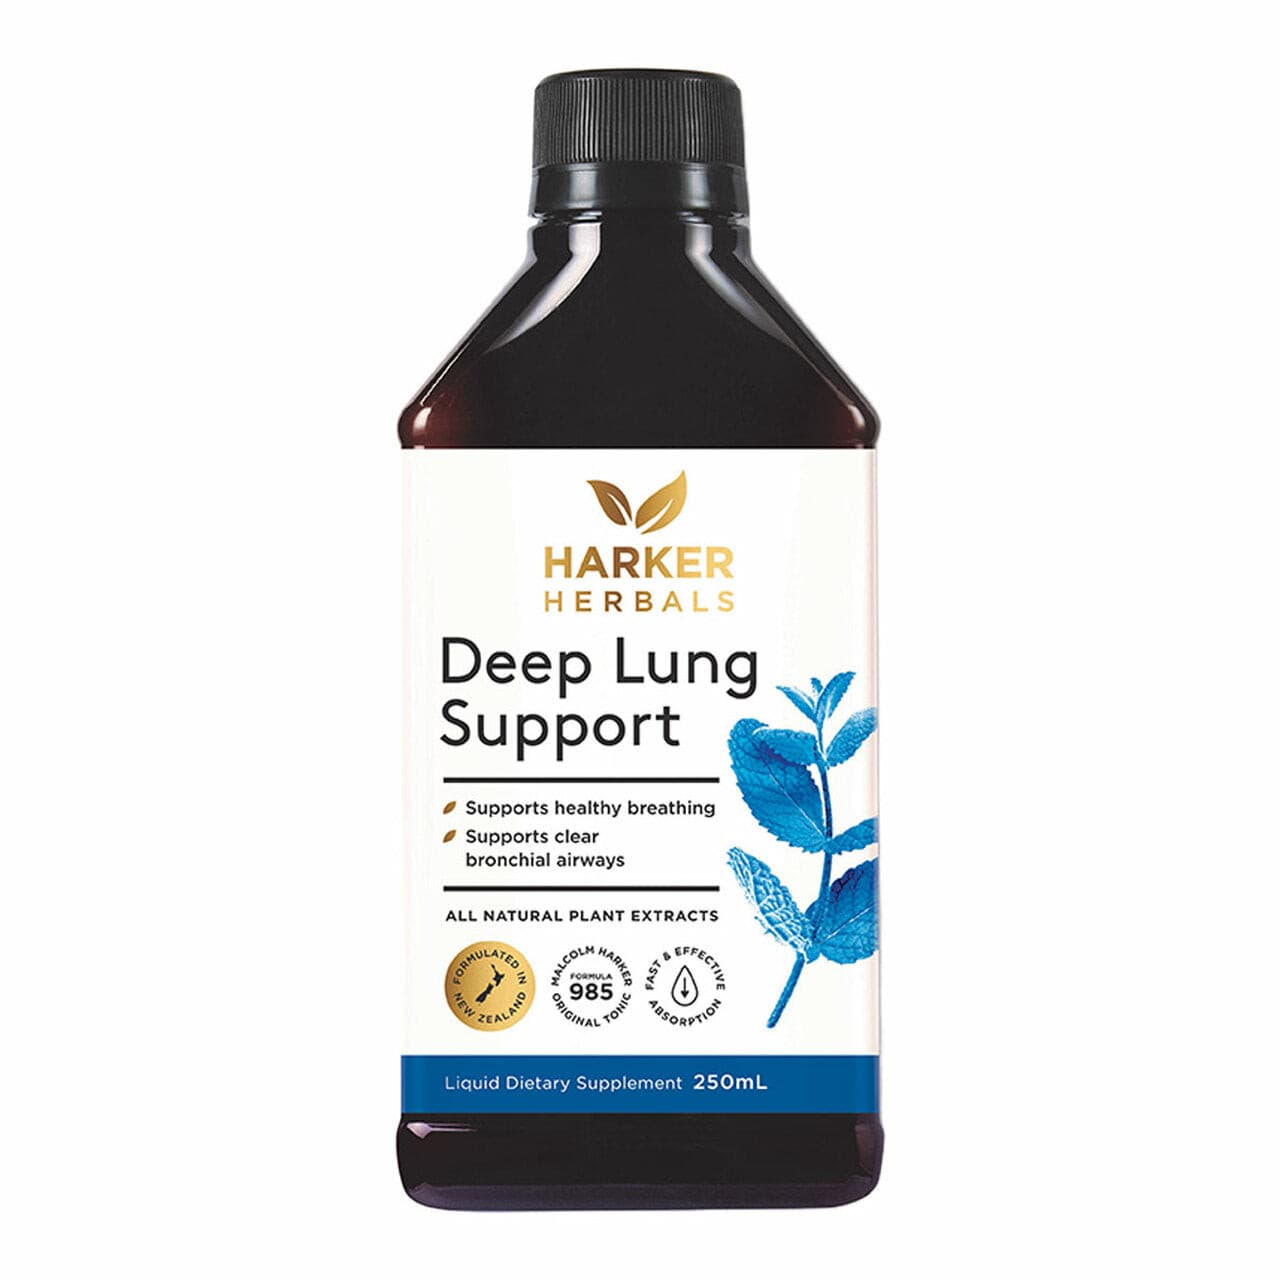 Harker Herbals Deep Lung Support.